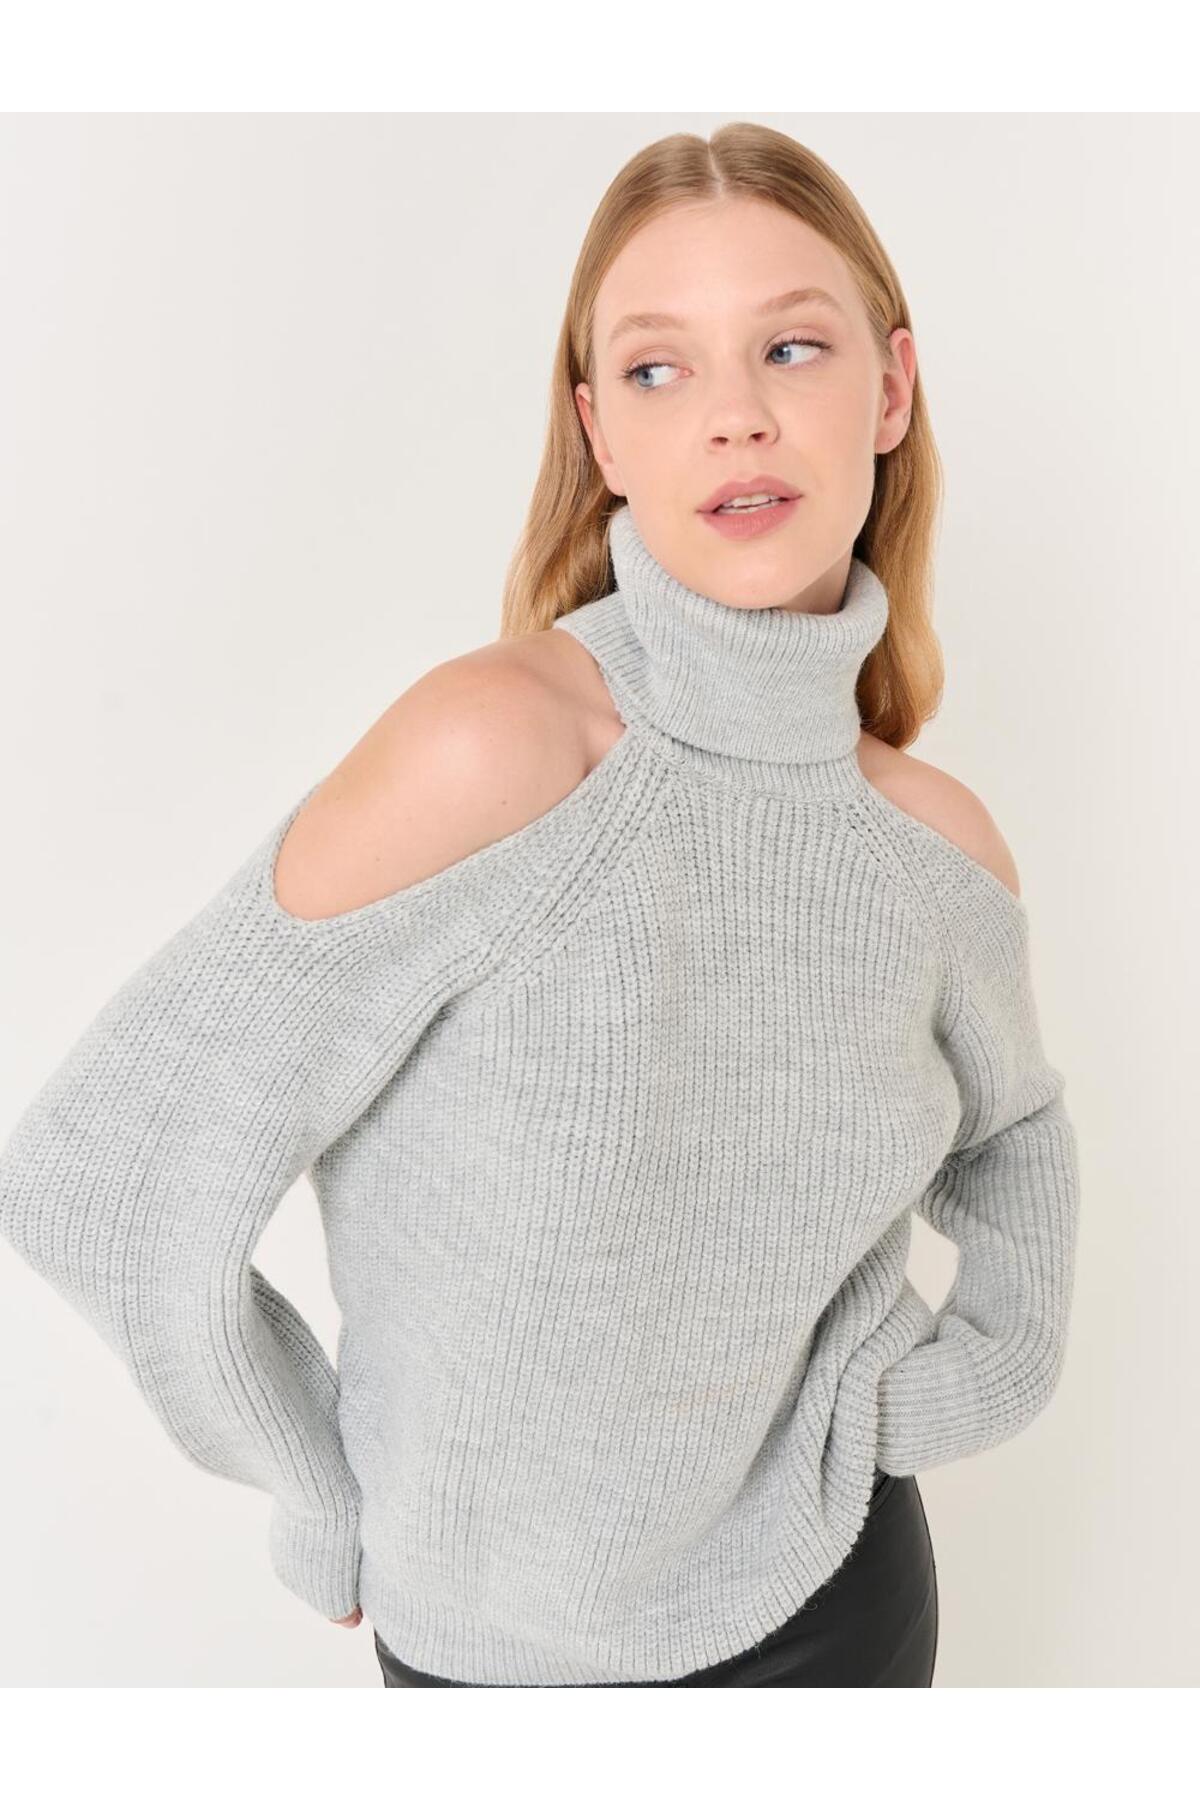 Jimmy Key Gray Turtleneck Shoulder Detailed Knitwear Sweater